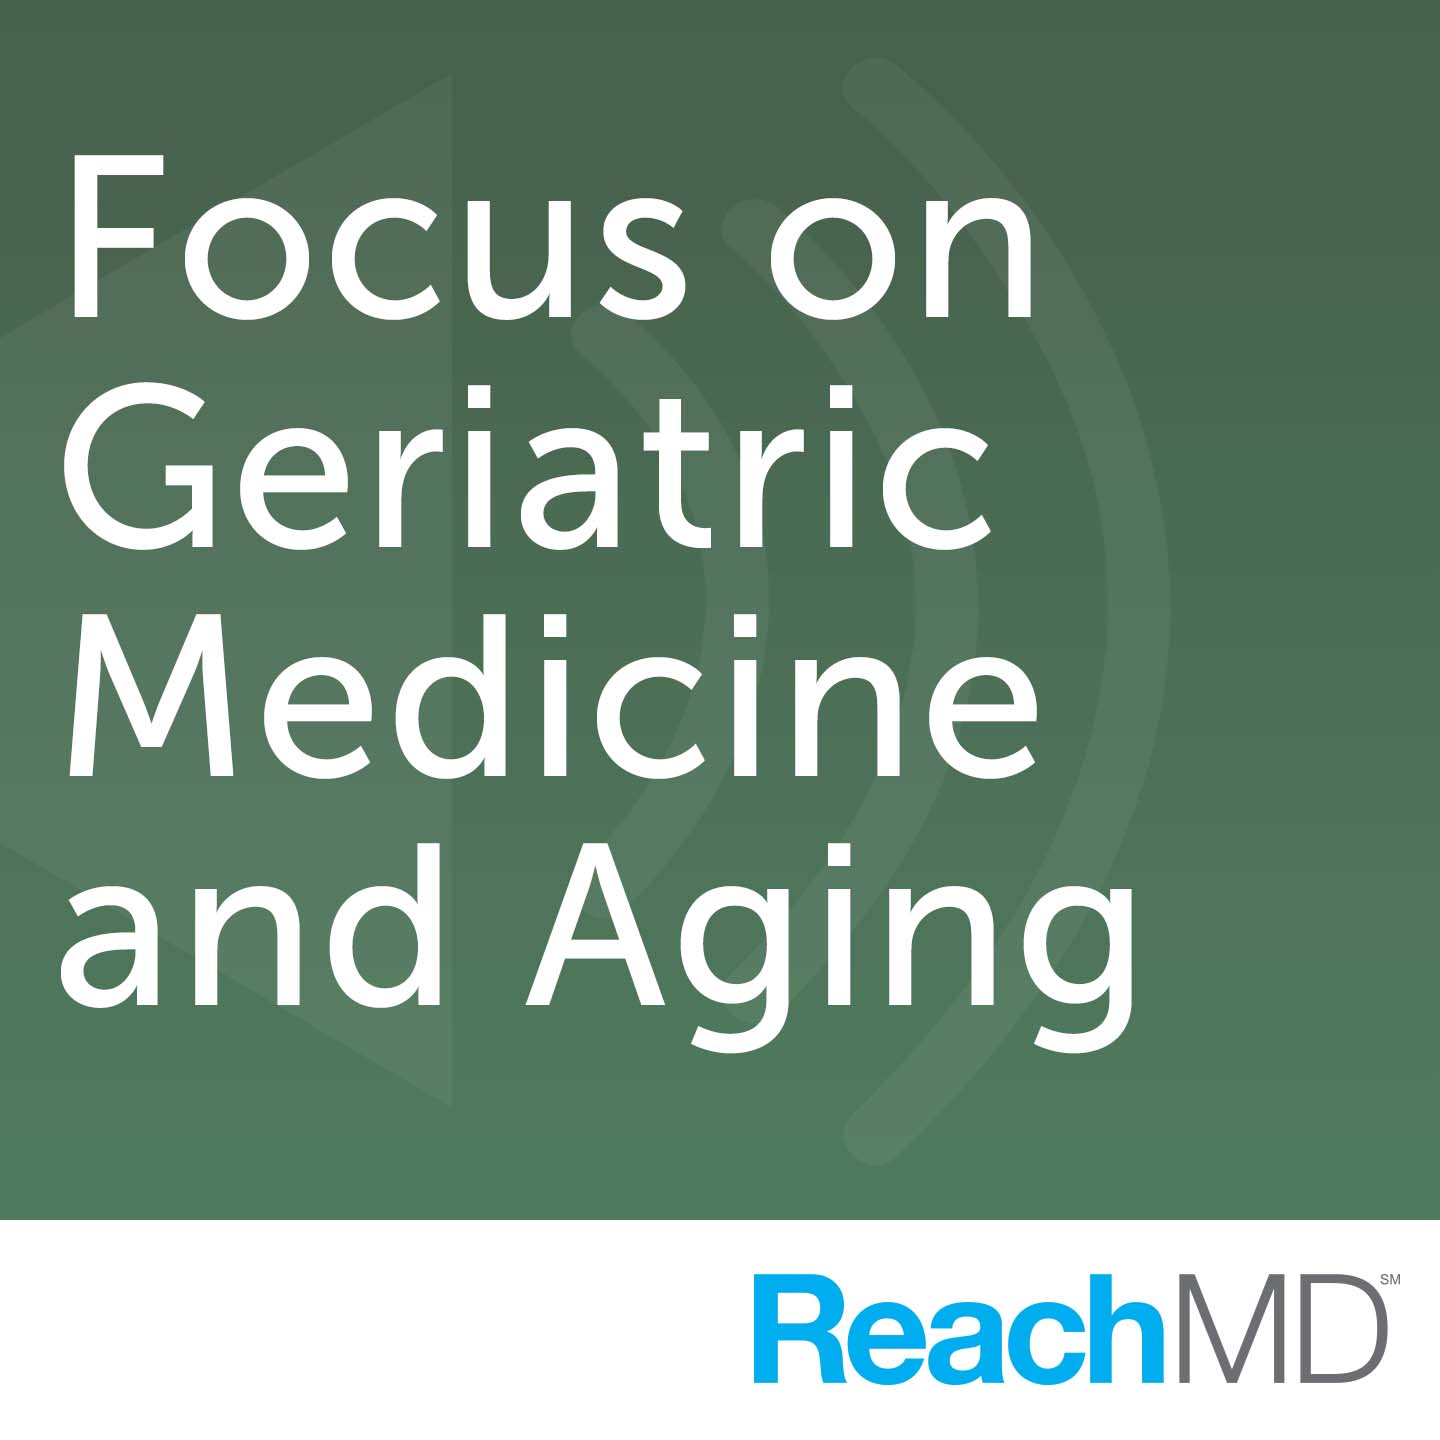 Focus on Geriatric Medicine and Aging